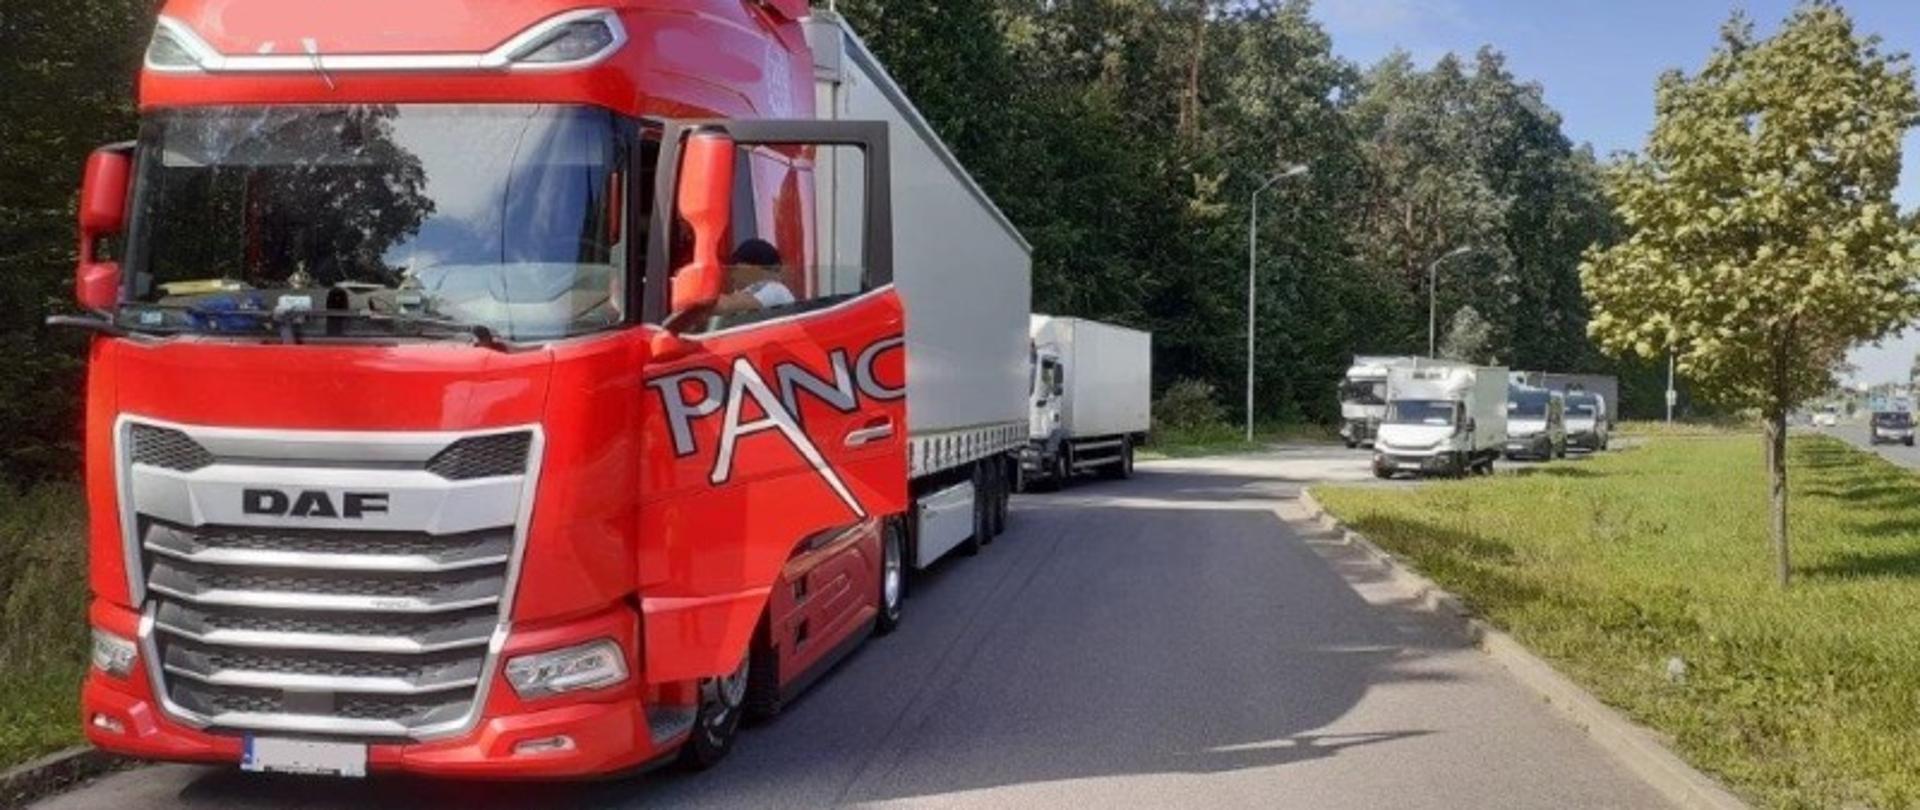 Pojazd członowy polskiego przewoźnika wykonującego międzynarodowy przewóz drogowy rzeczy